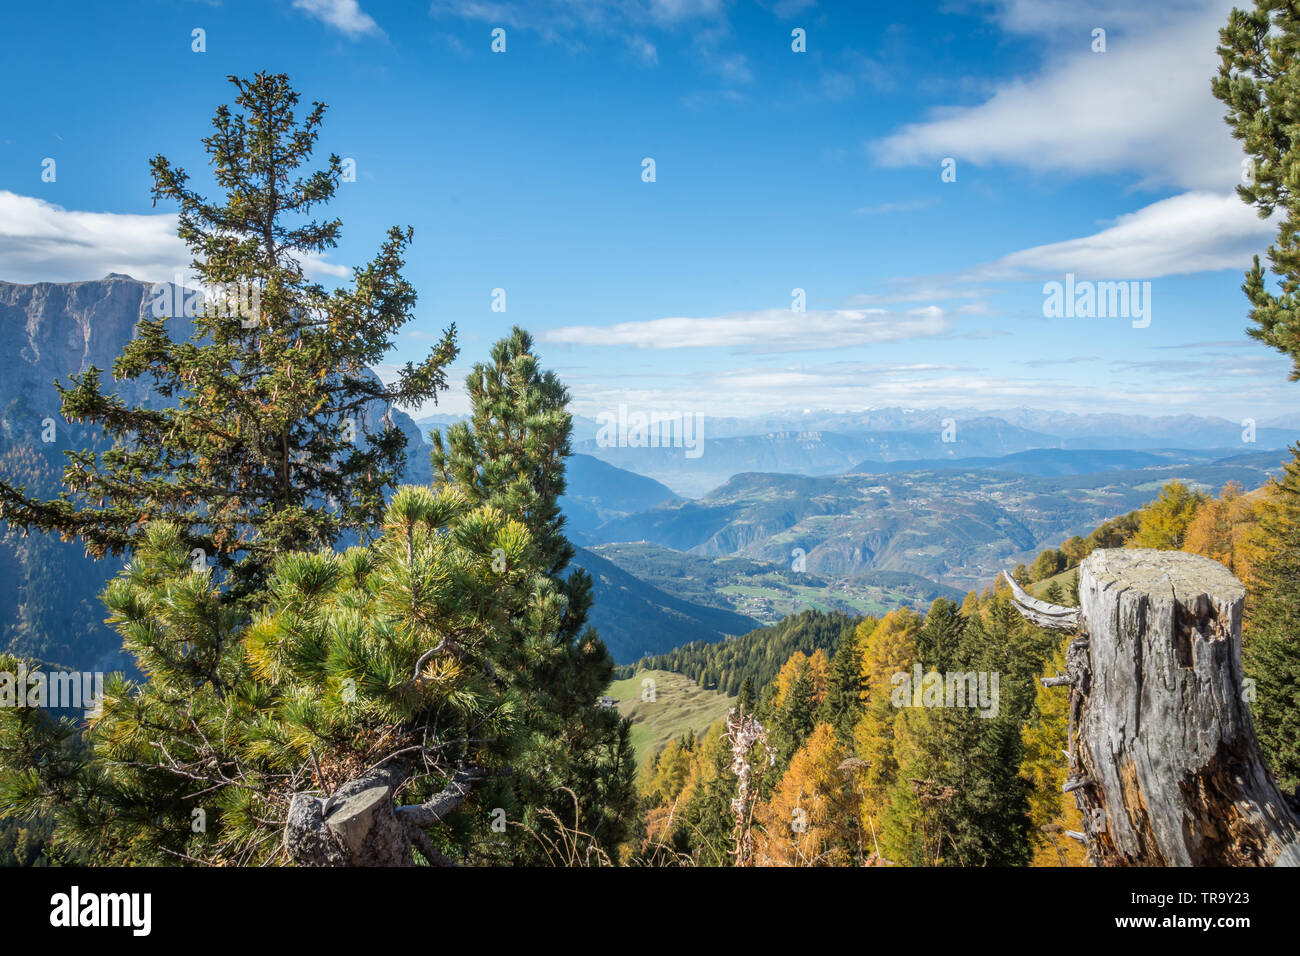 Una splendida vista in elevazione da una foresta in alto sulla cima delle Dolomiti nel Nord Italia in una limpida giornata di sole con il cielo blu e una visibilità eccellente. Foto Stock